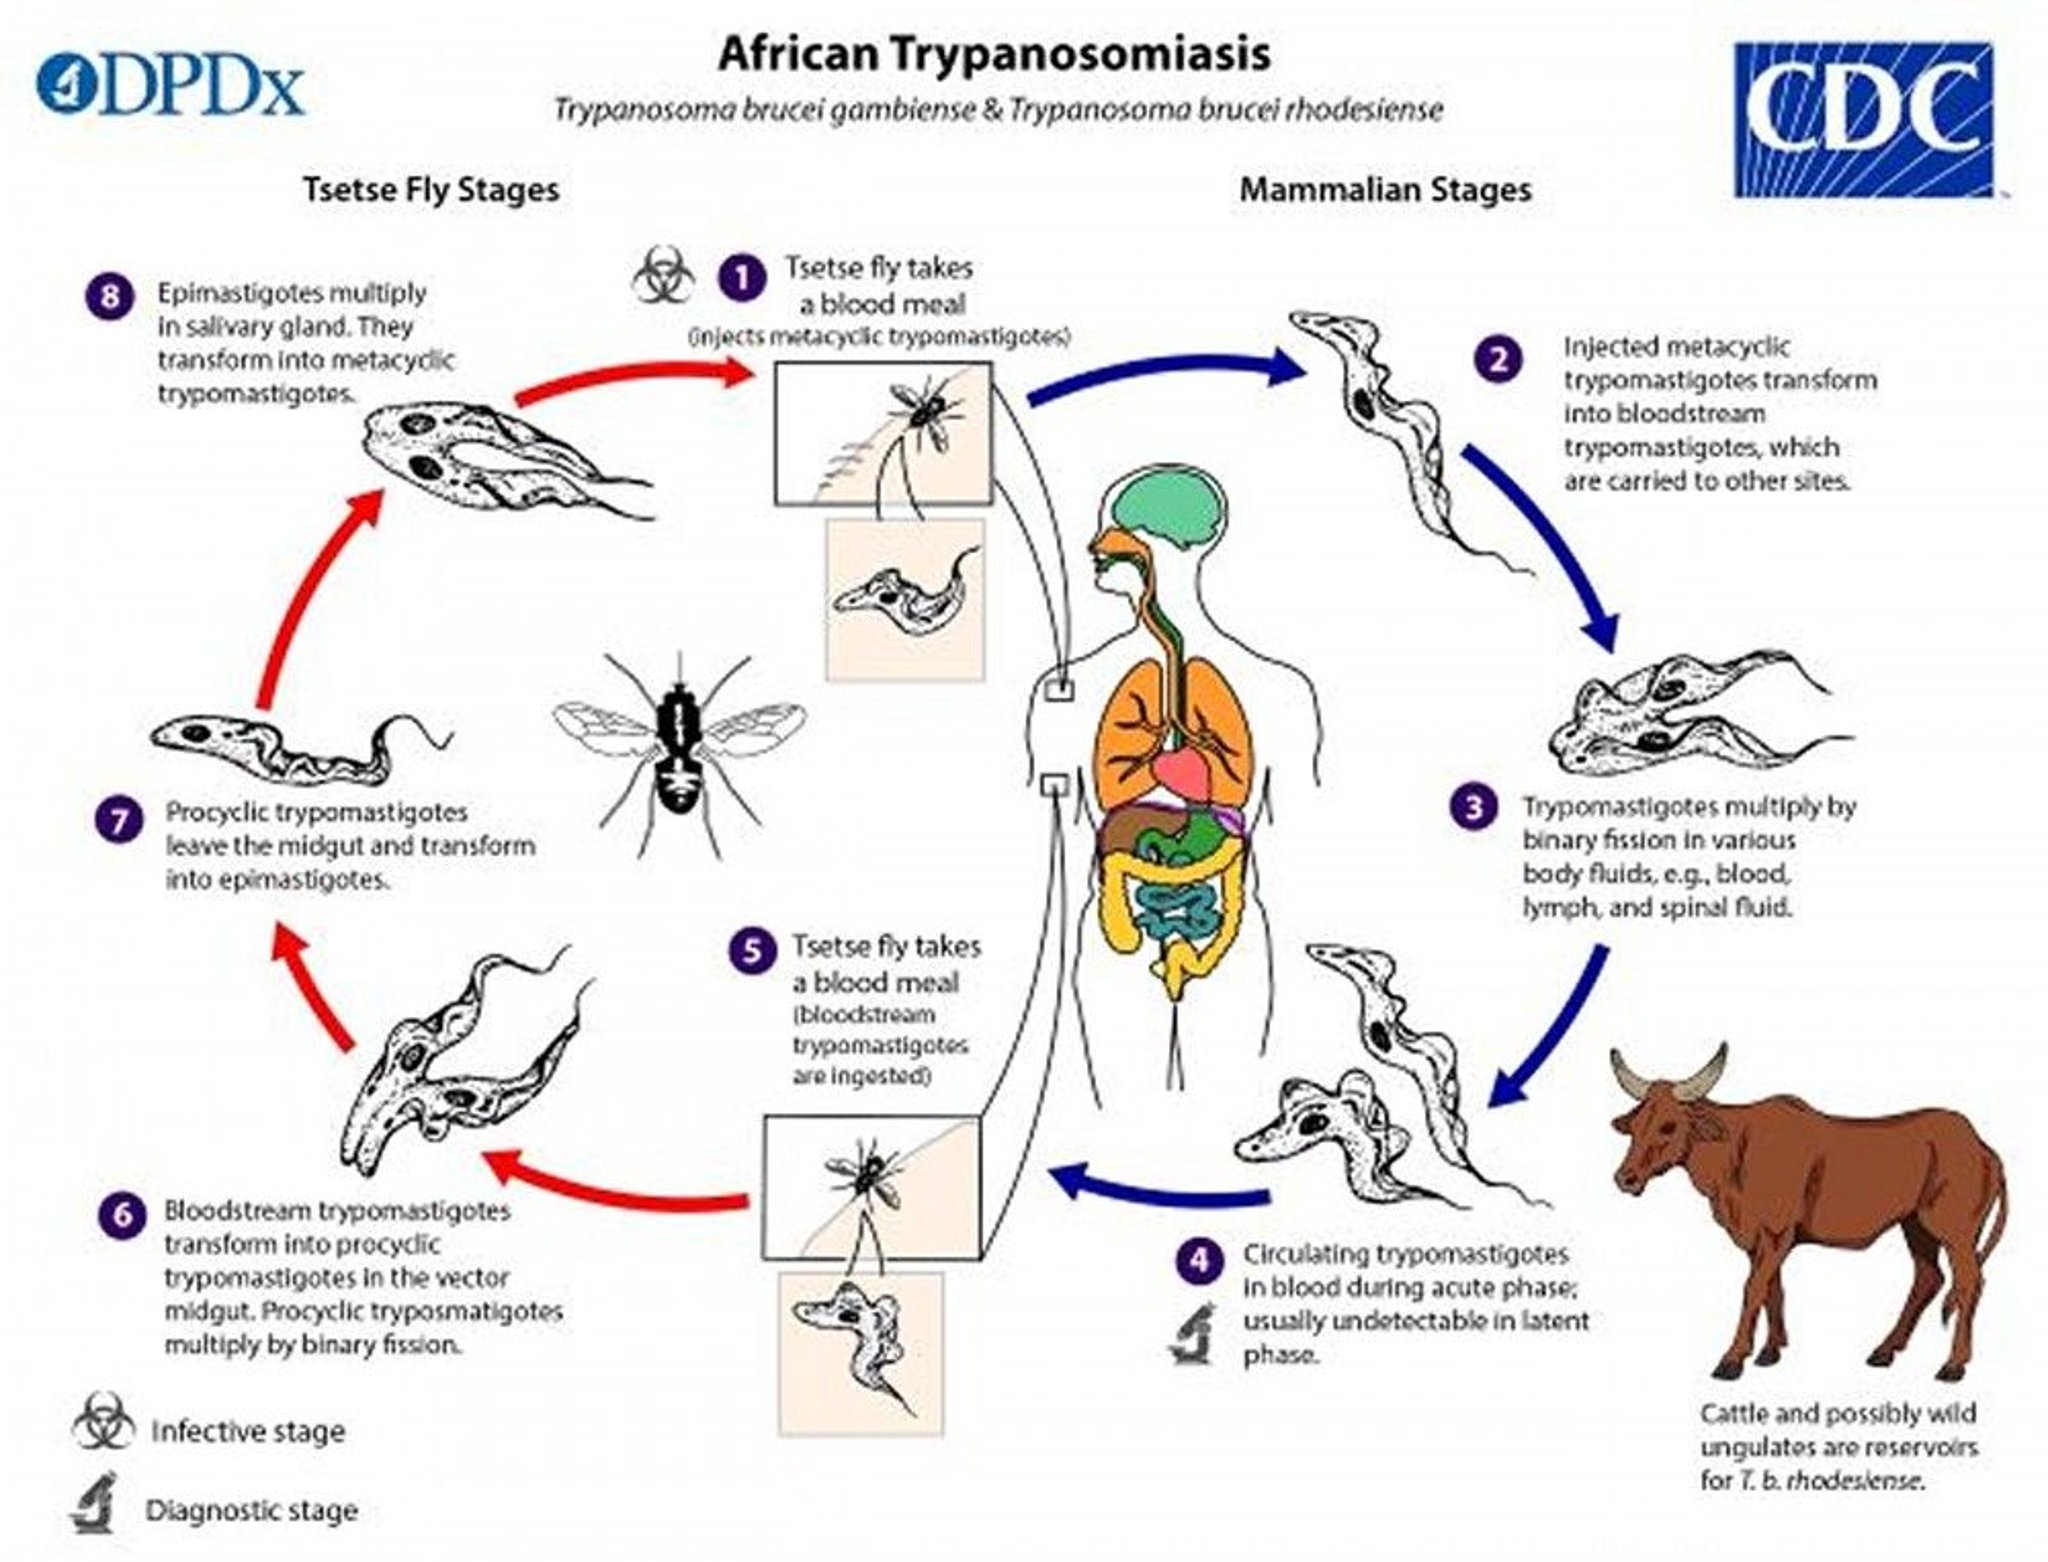 Life Cycle of <i >Trypanosoma brucei gambiense</i> and <i >Trypanosoma brucei rhodesiense</i>